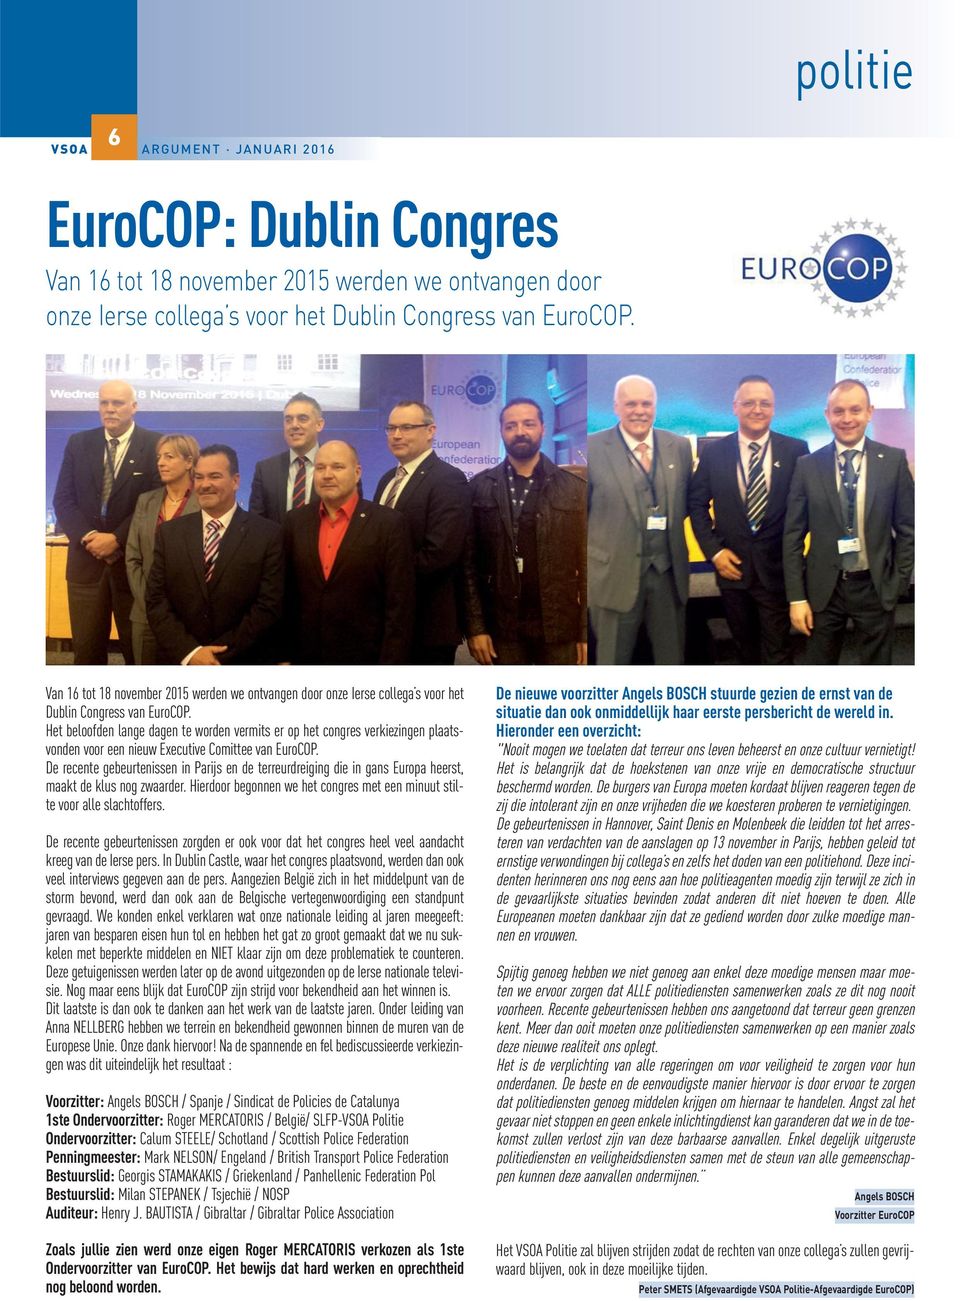 Het beloofden lange dagen te worden vermits er op het congres verkiezingen plaatsvonden voor een nieuw Executive Comittee van EuroCOP.